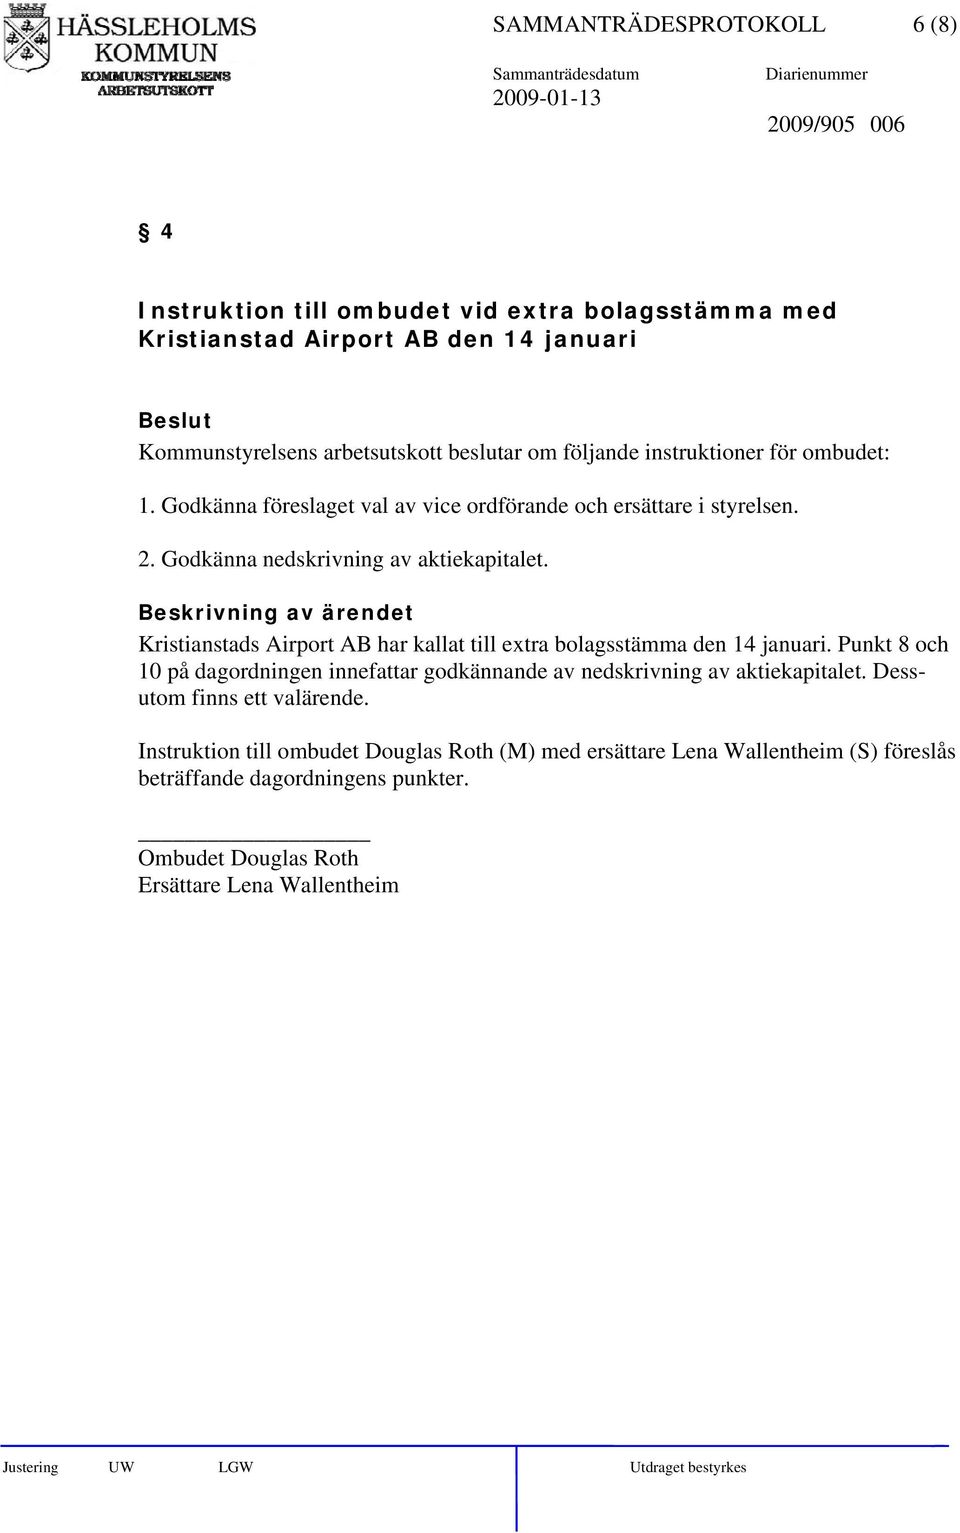 Kristianstads Airport AB har kallat till extra bolagsstämma den 14 januari. Punkt 8 och 10 på dagordningen innefattar godkännande av nedskrivning av aktiekapitalet.